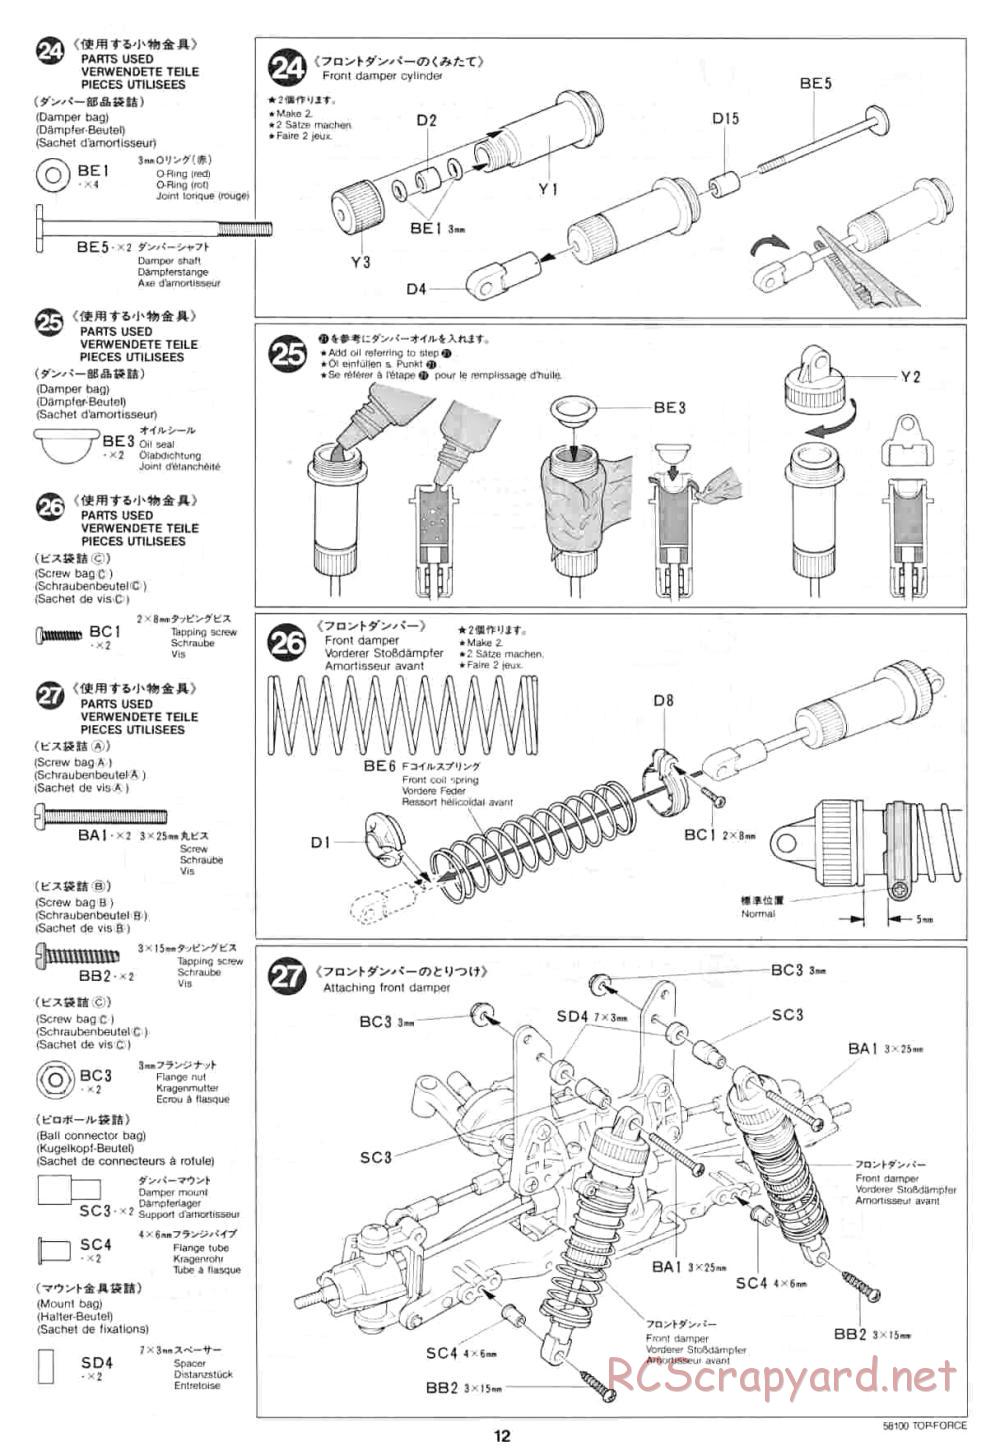 Tamiya - Top Force - 58100 - Manual - Page 12